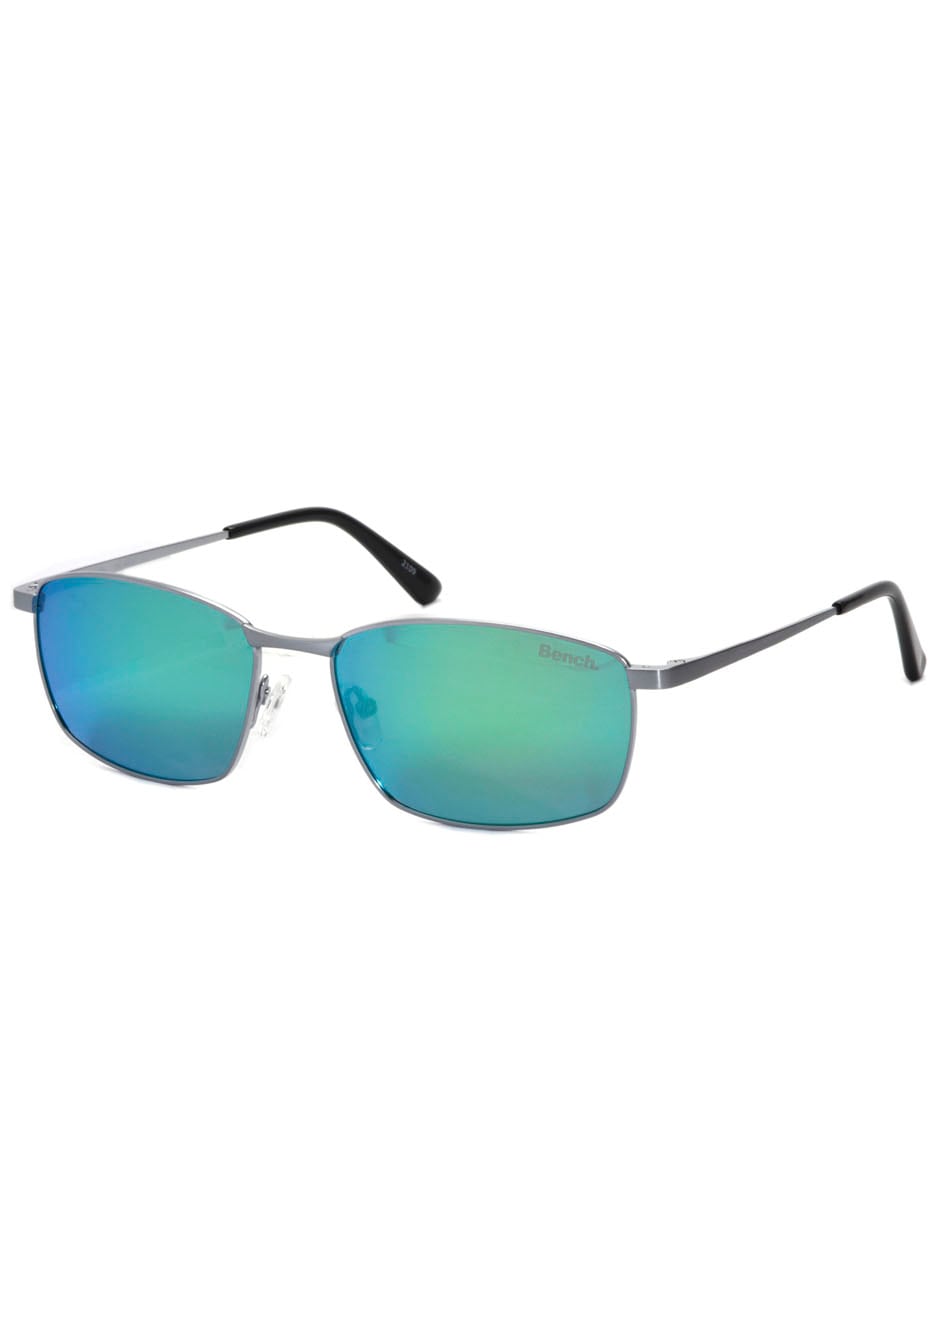 Bench. Sonnenbrille, ultraleicht für Ansprüche BAUR Material-Qualität online bestellen an höchste 